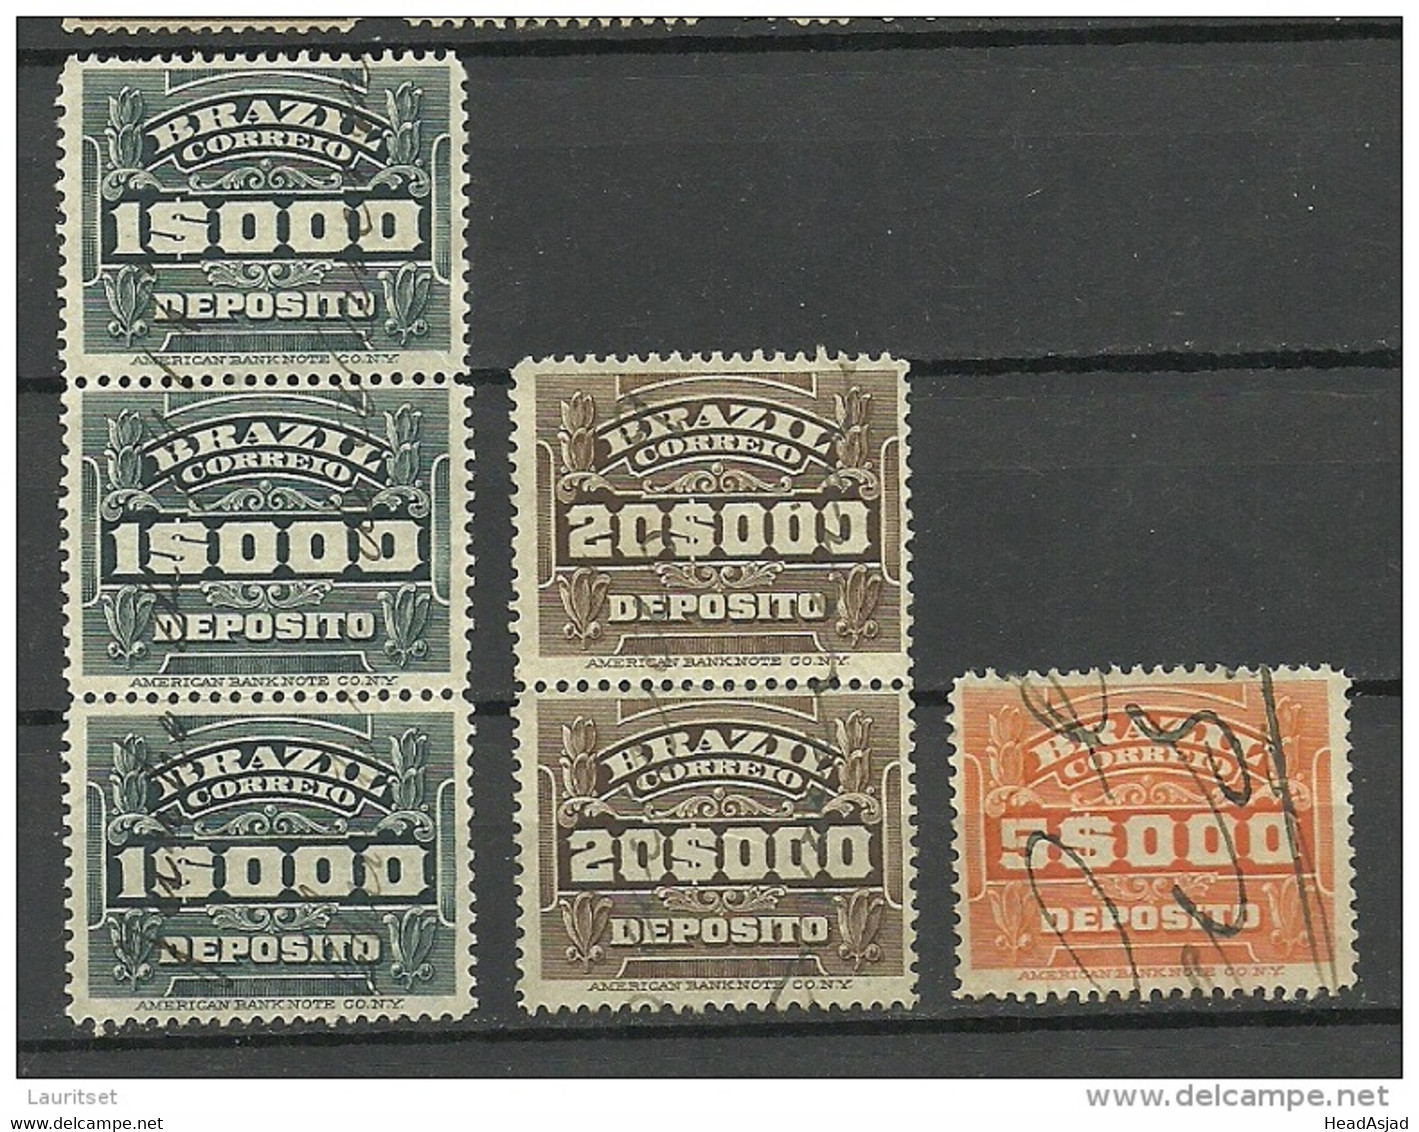 BRAZIL Brazilia Old Revenue Tax Stamps Deposito O - Service